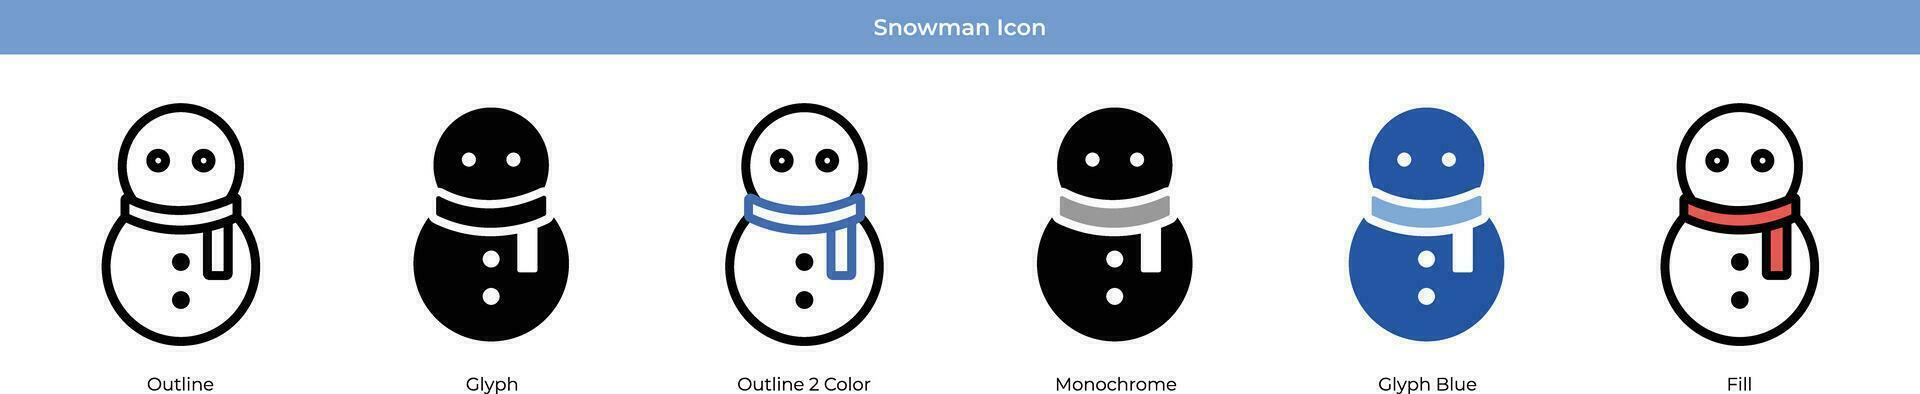 Snowman Icon Set vector